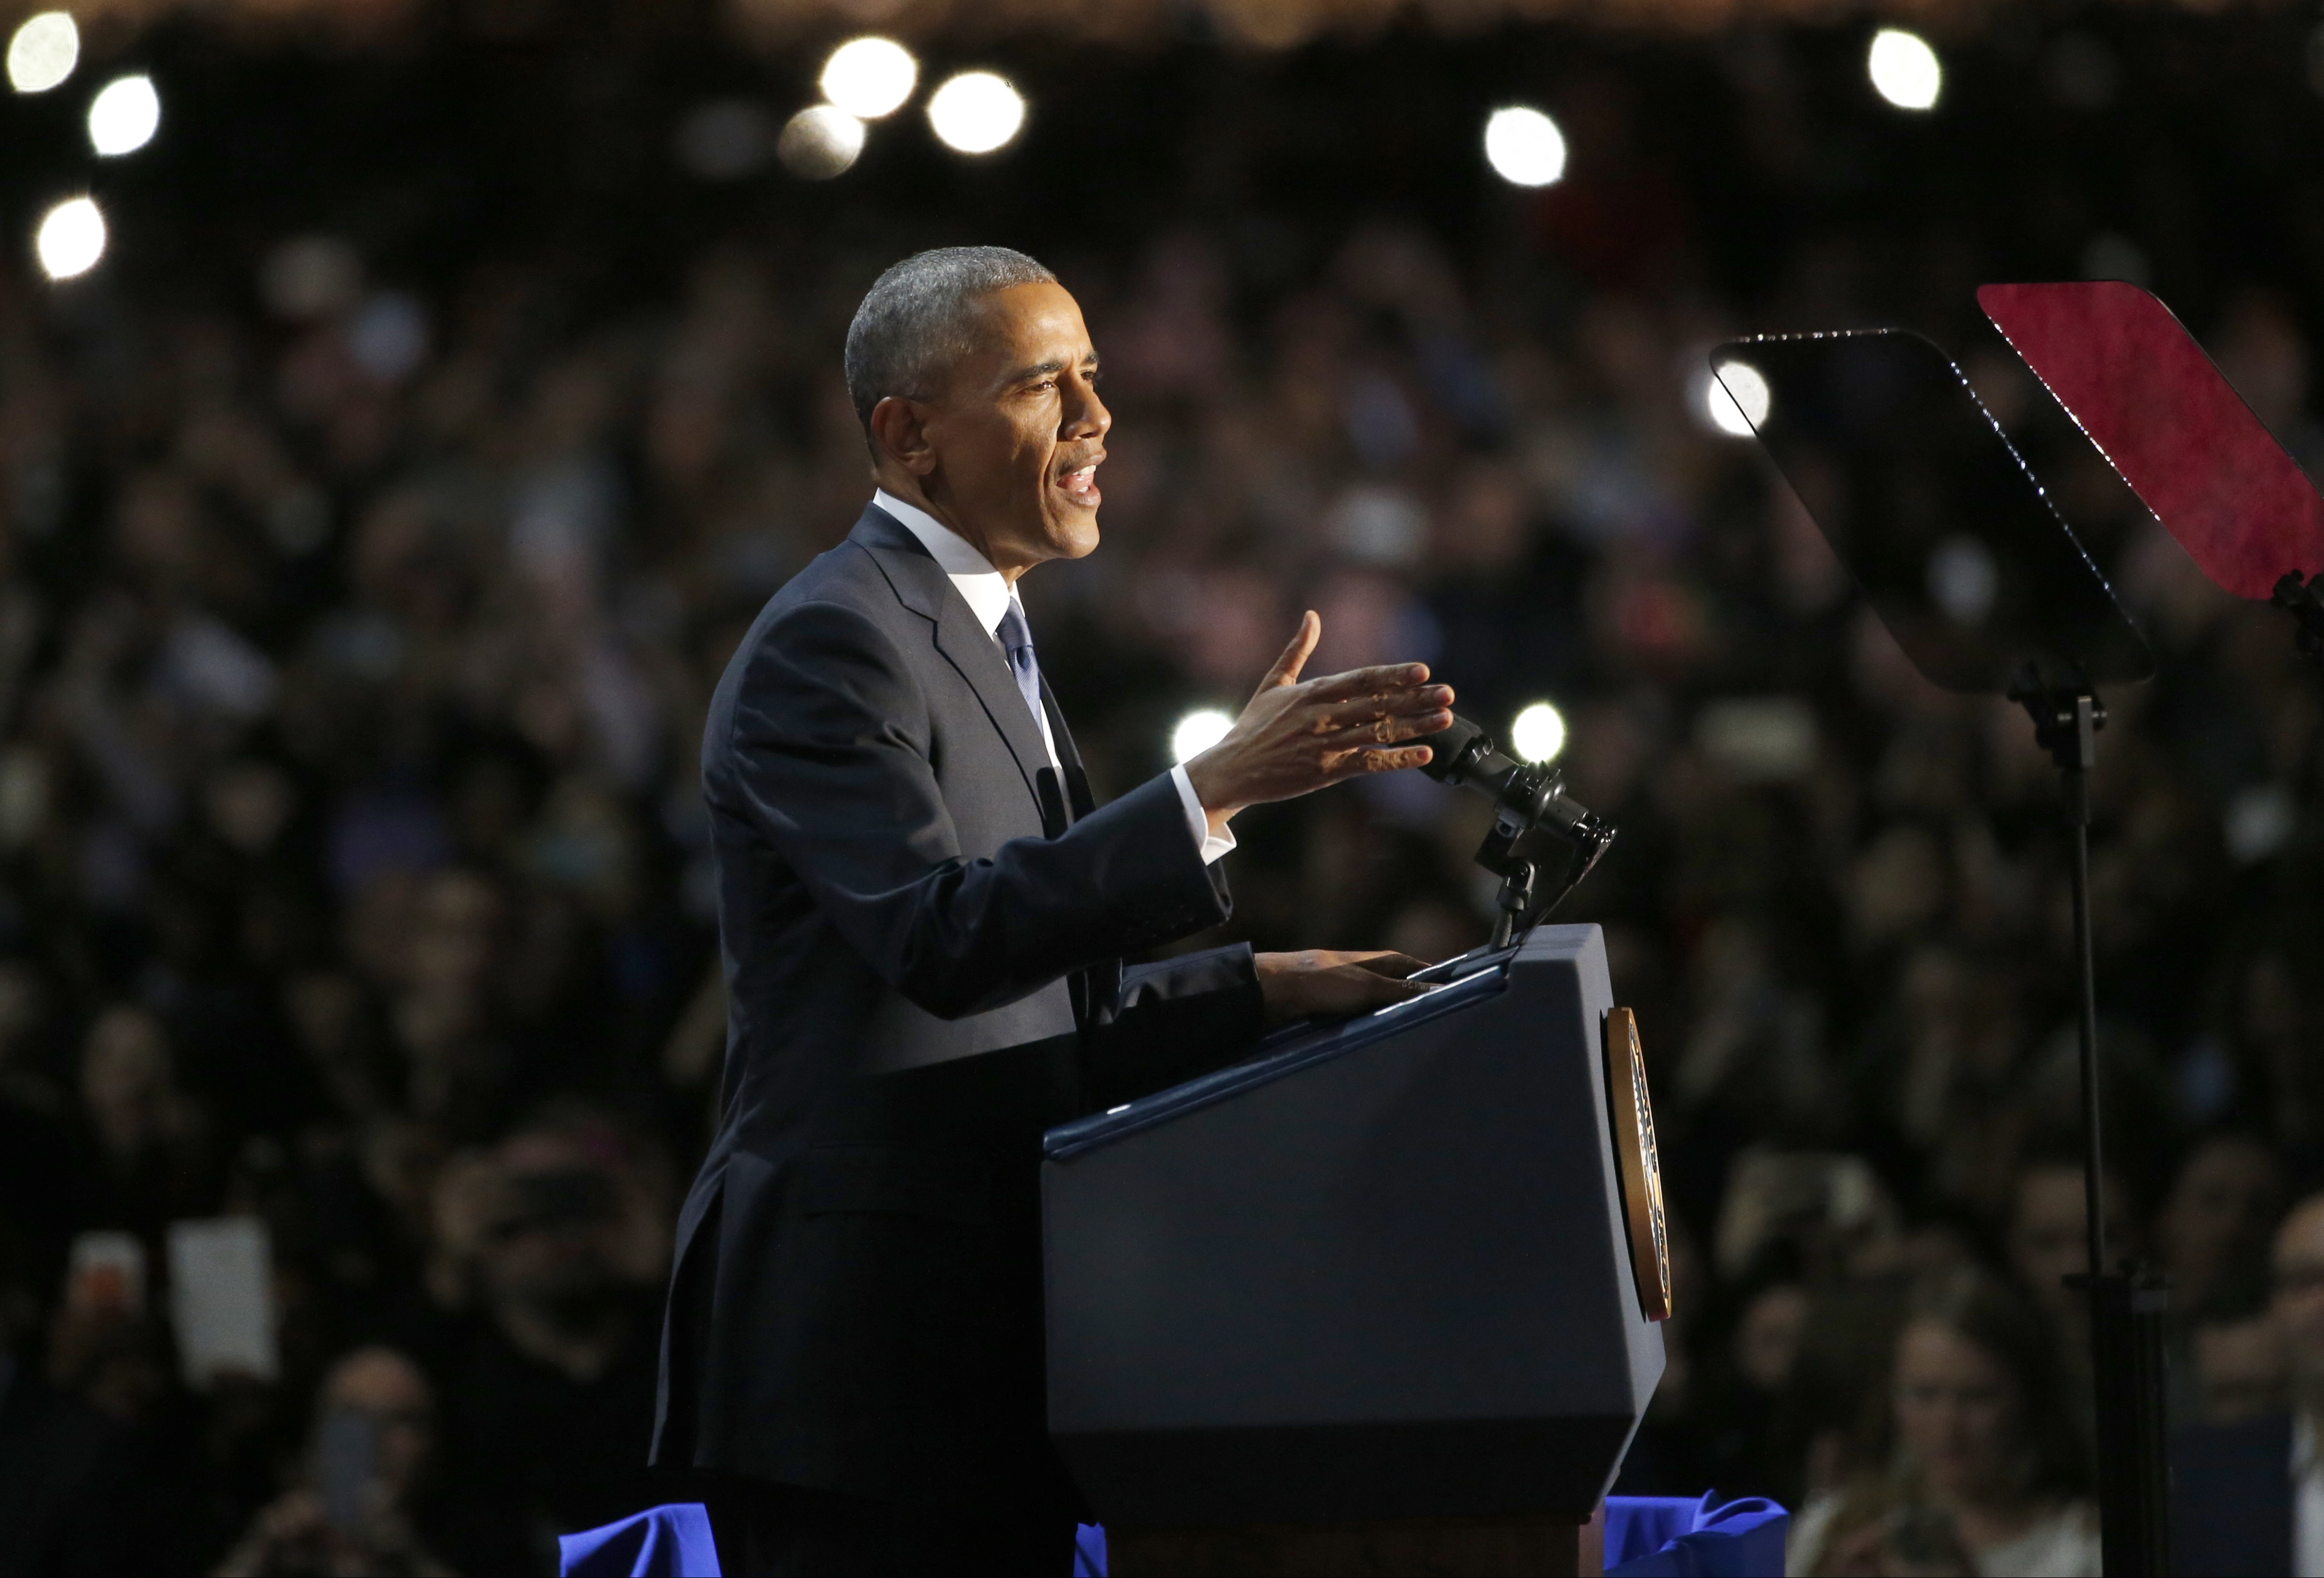 Момент от прощалната реч на Обама в Чикаго